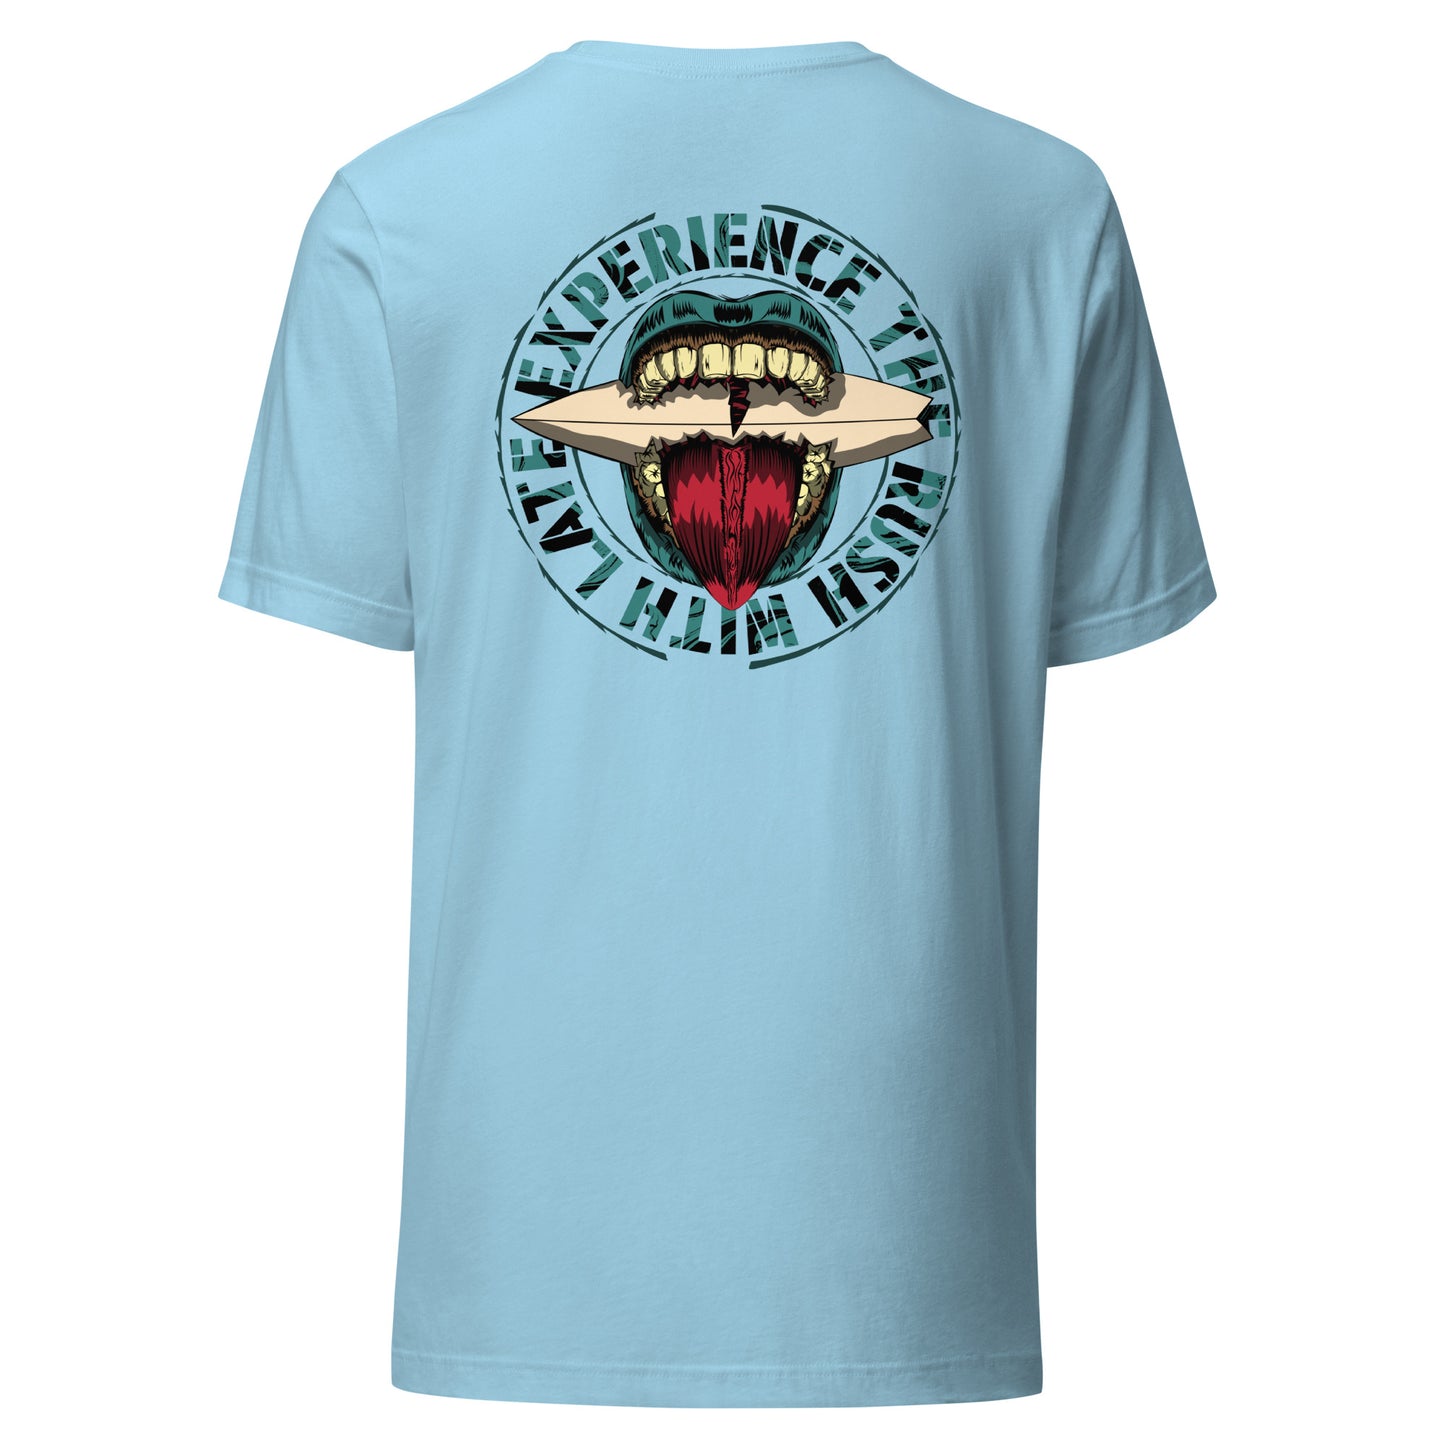 T-Shirt de surfeur style santacruz skateboarding et planche de surf texte experience the rush Late t-shirt dos couleur bleu océan